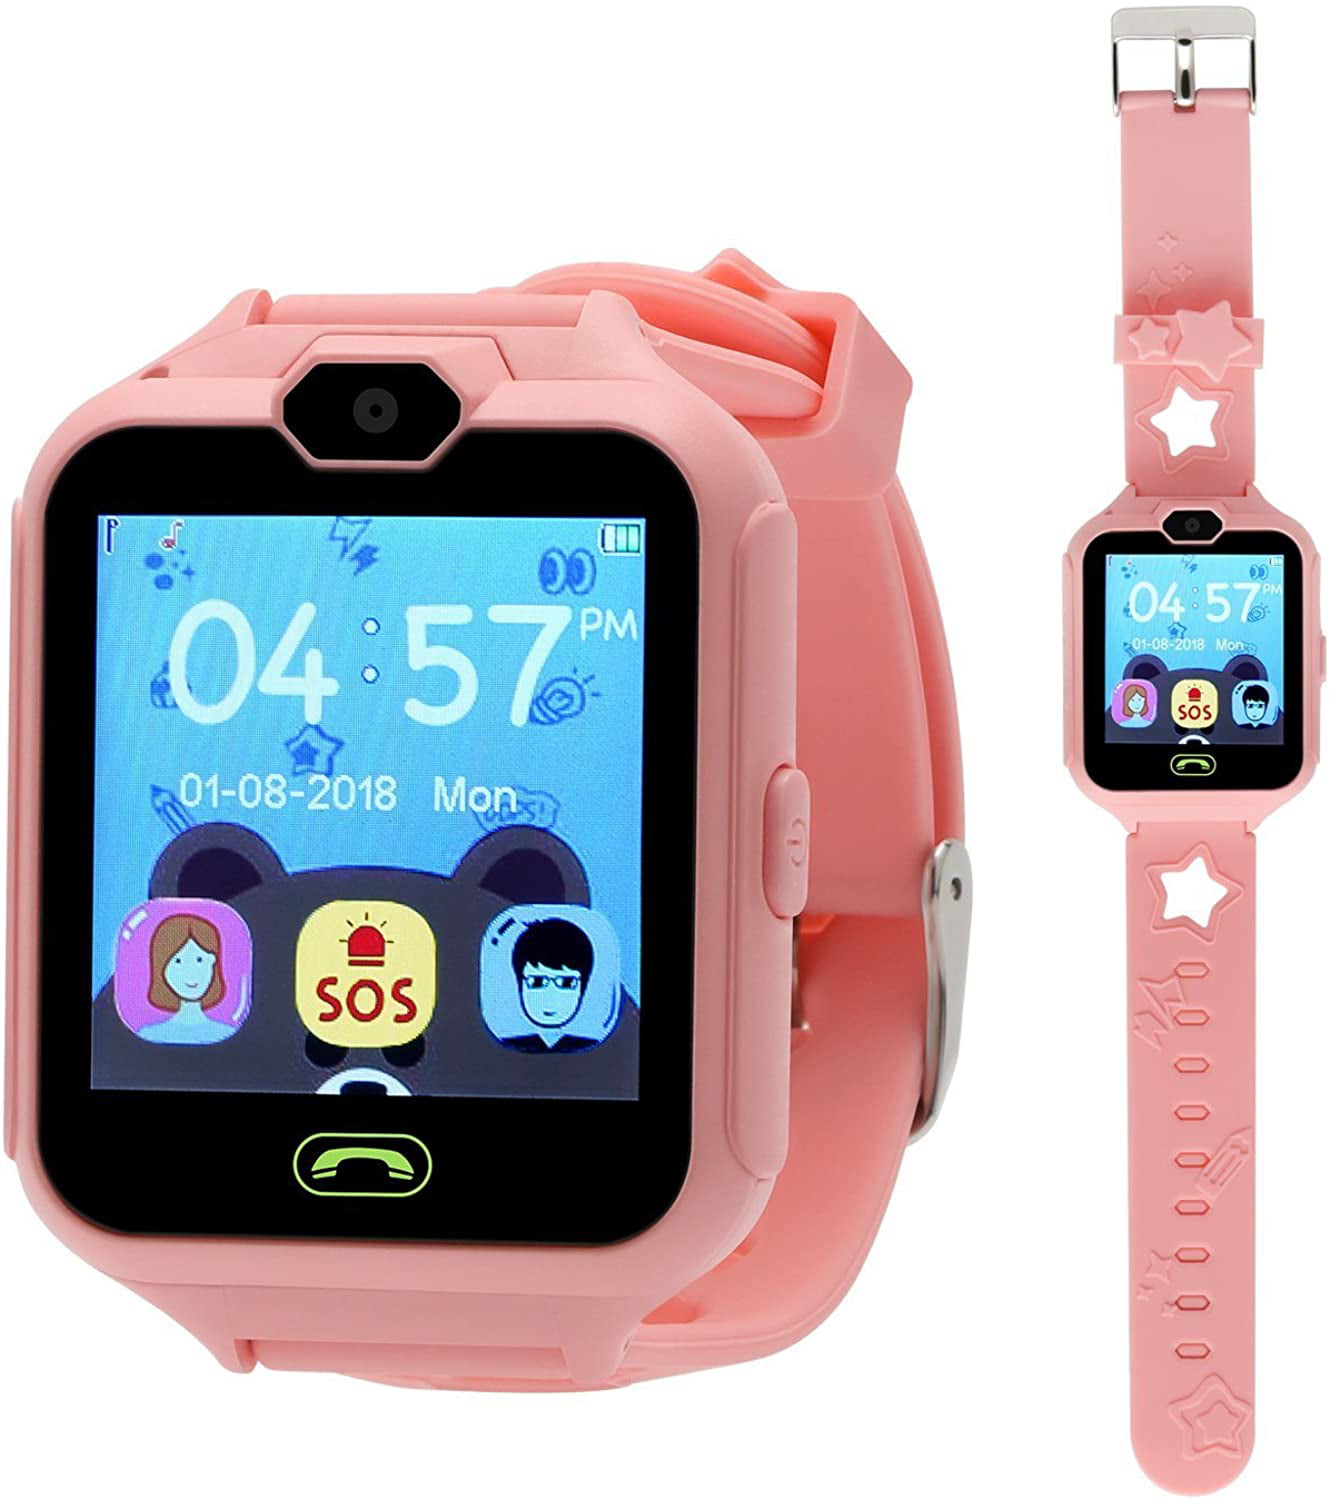 Час кид. Детские смарт часы for Kids с играми. Часы детские Kids. Игровые часы Smart. Детские смарт часы Kidsphone с играми.